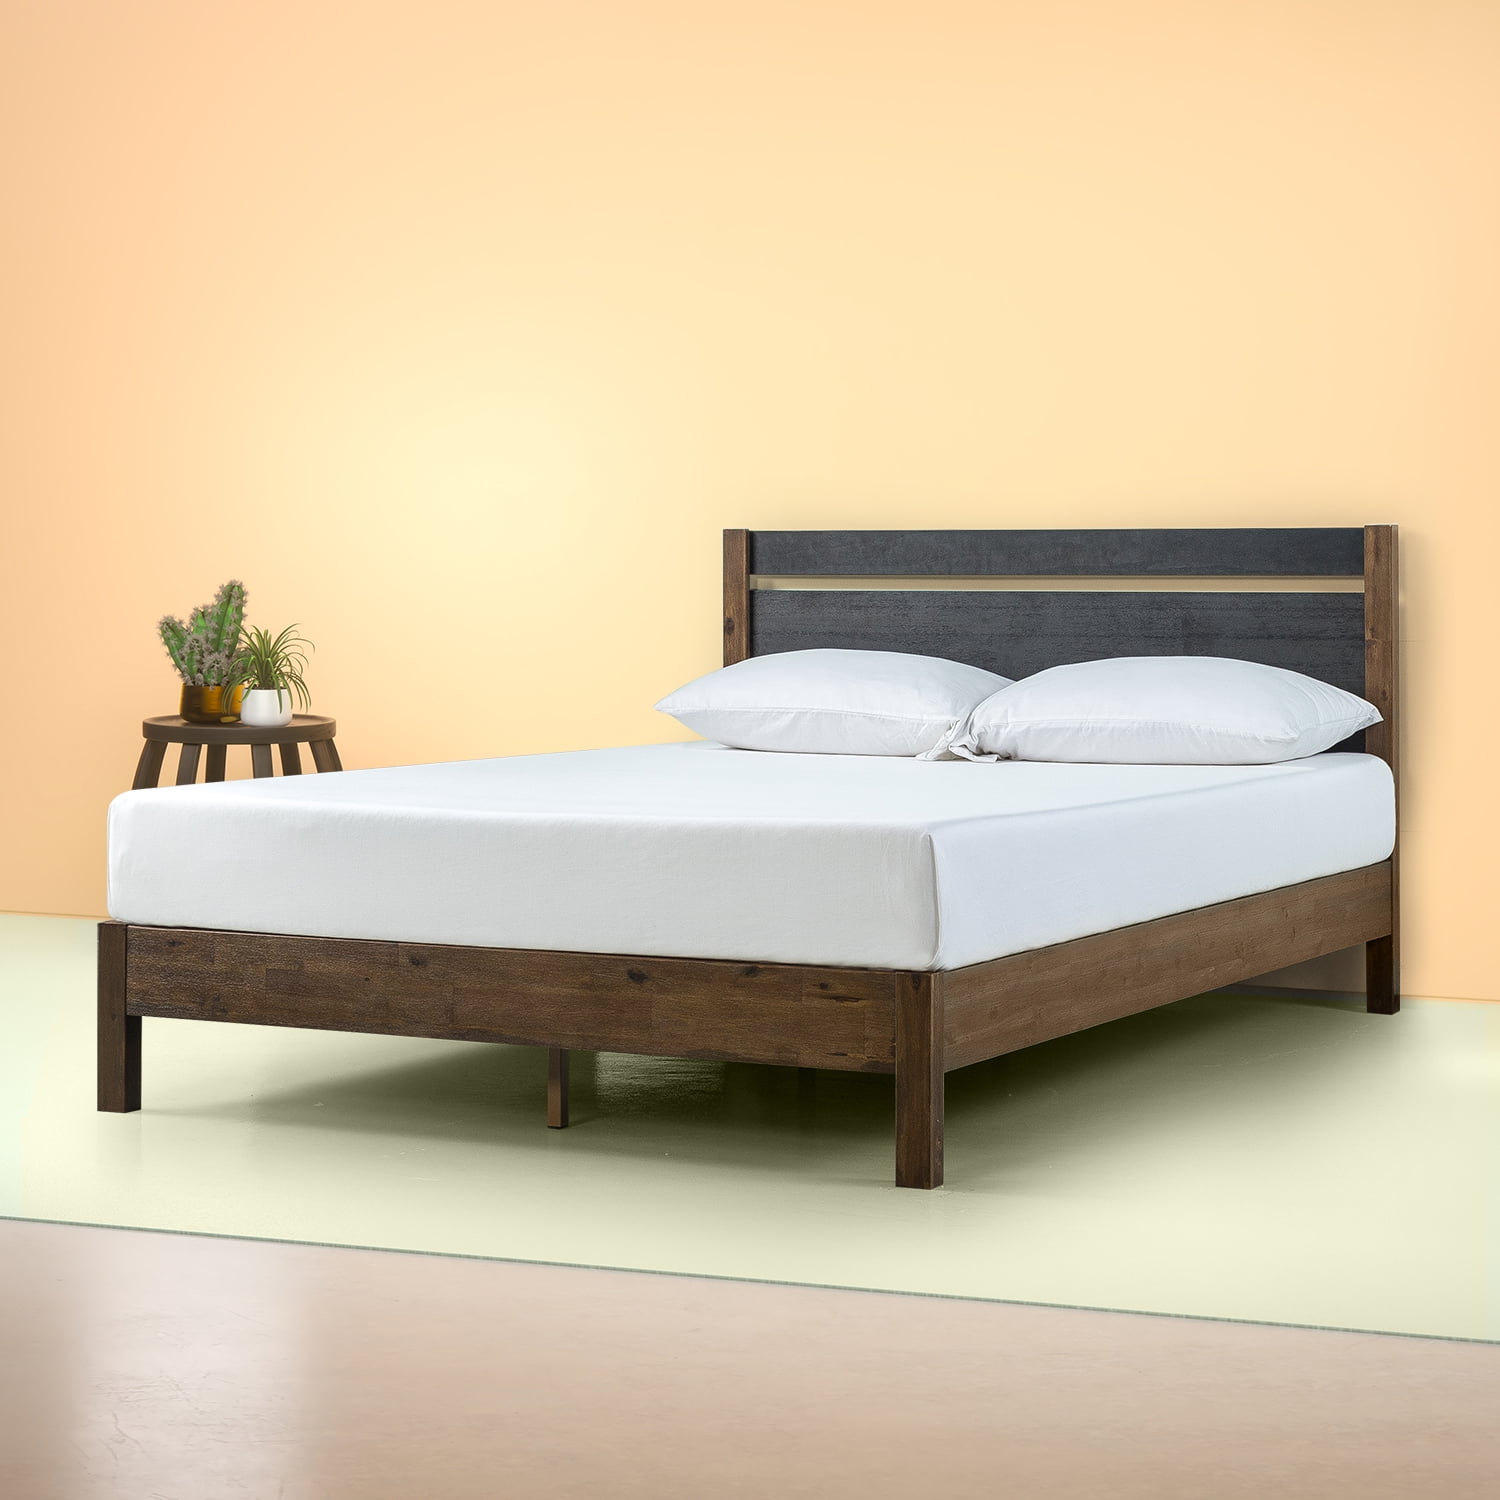 Zinus Stefan 38 Wood Platform Bed With, Zinus Trisha 27 Heavy Duty Platforma Bed Frame With Headboard Queen